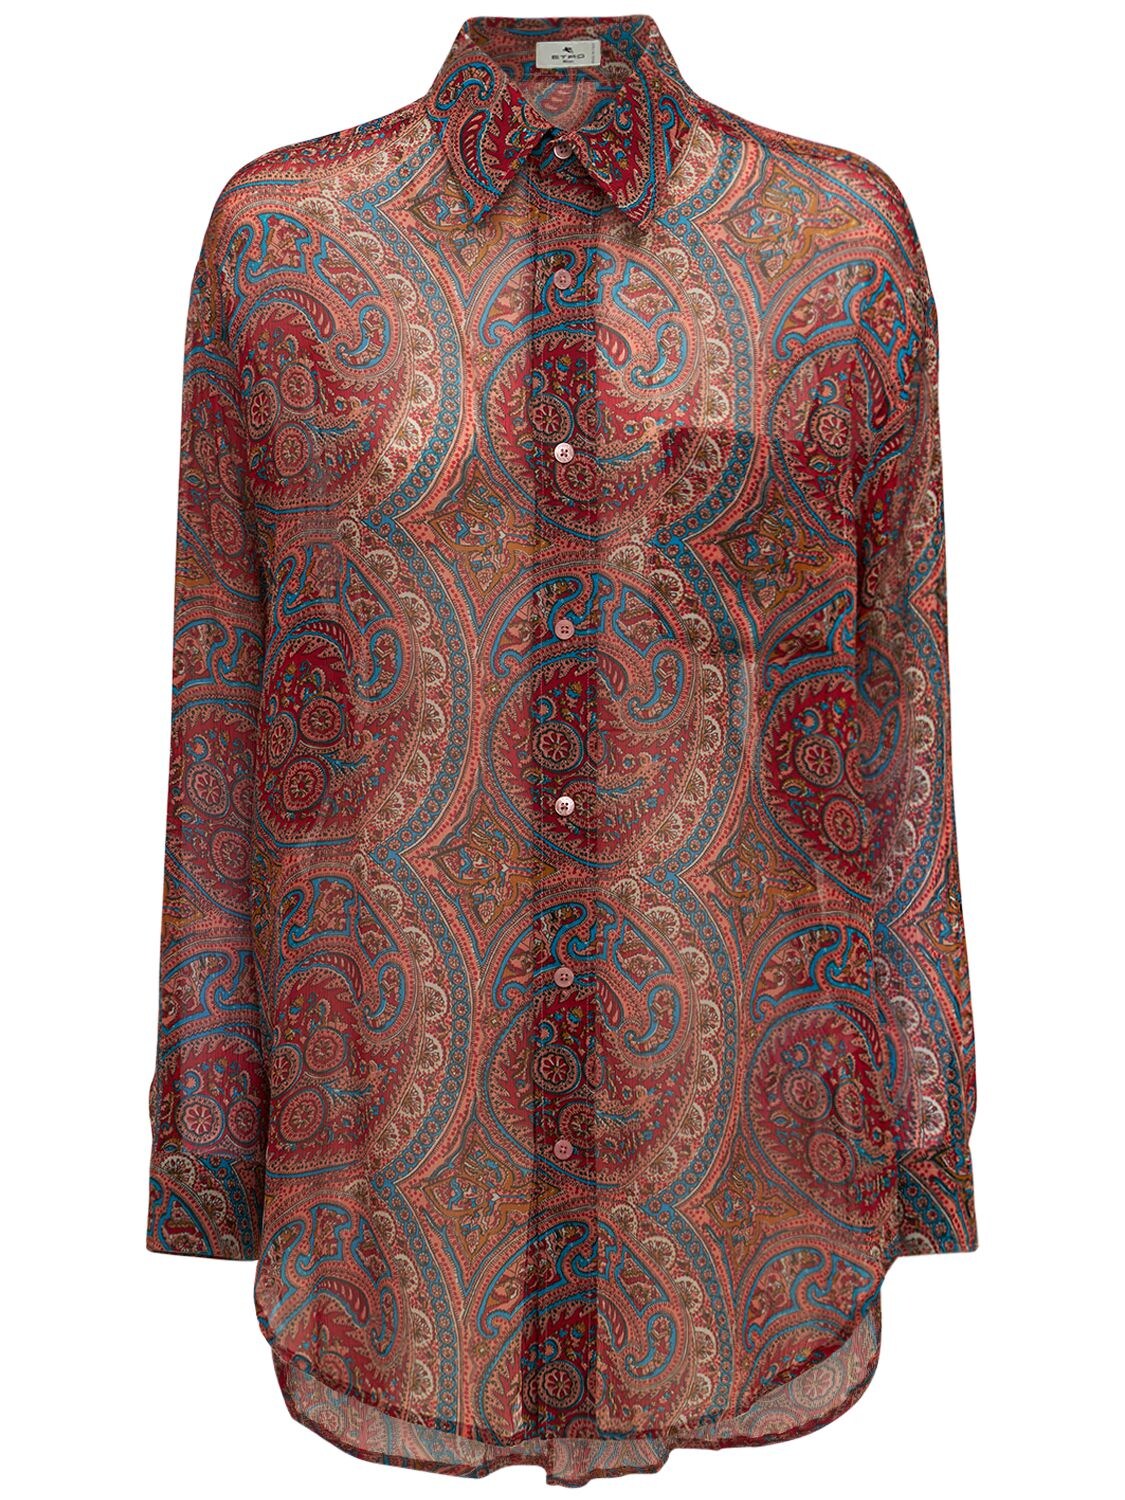 Etro - Printed silk chiffon shirt - Multicolor | Luisaviaroma